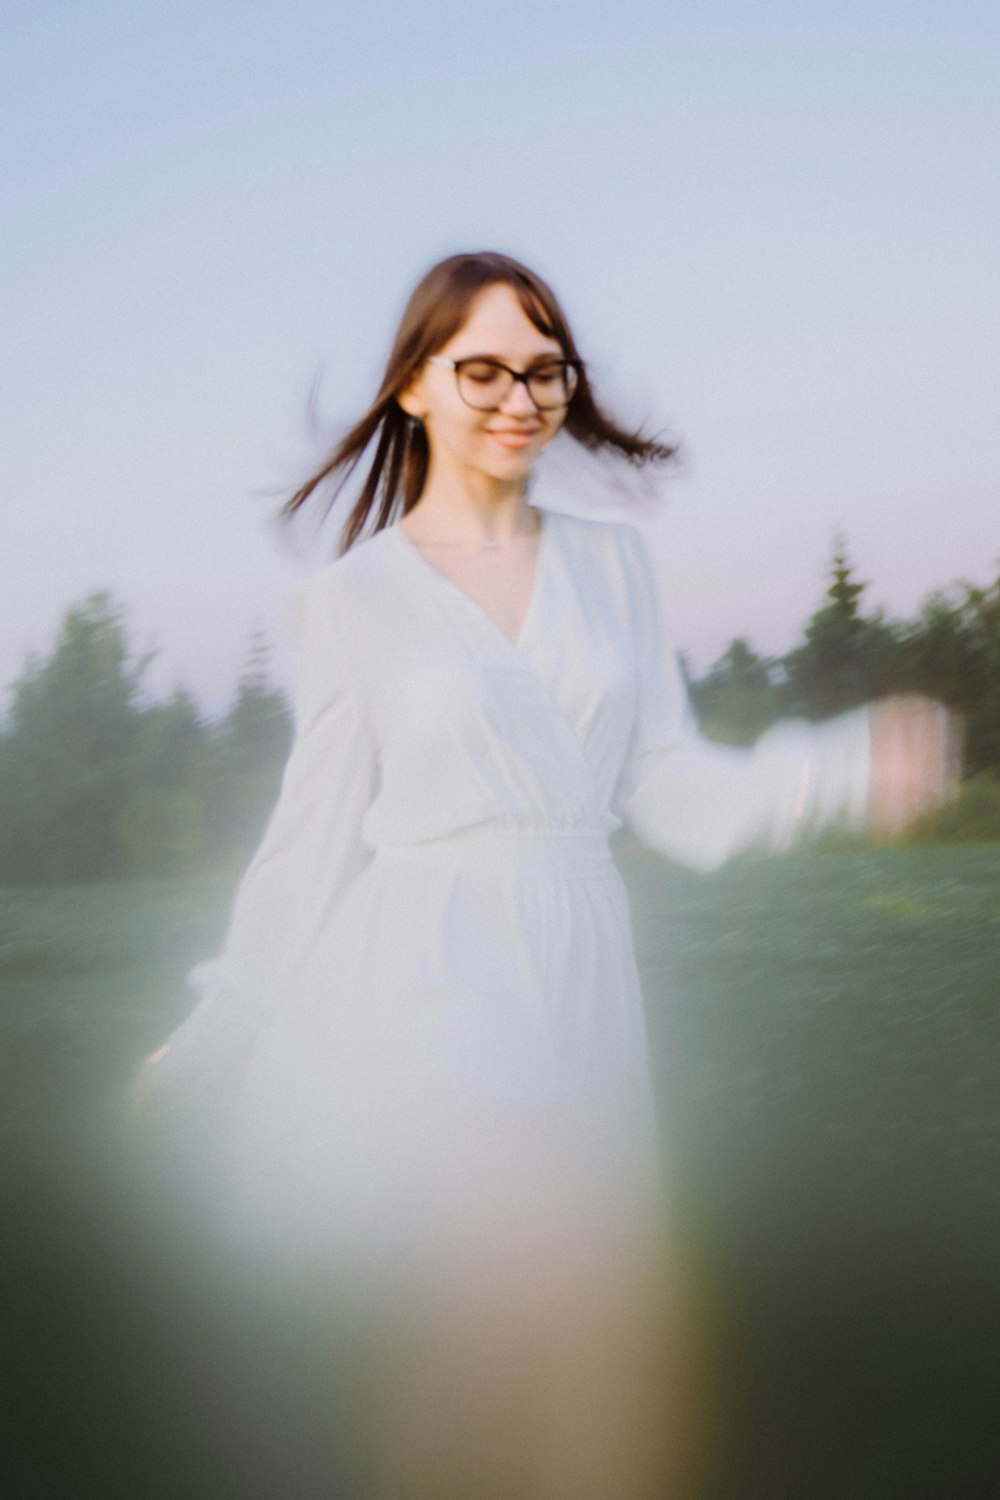 una donna che indossa occhiali e un vestito bianco